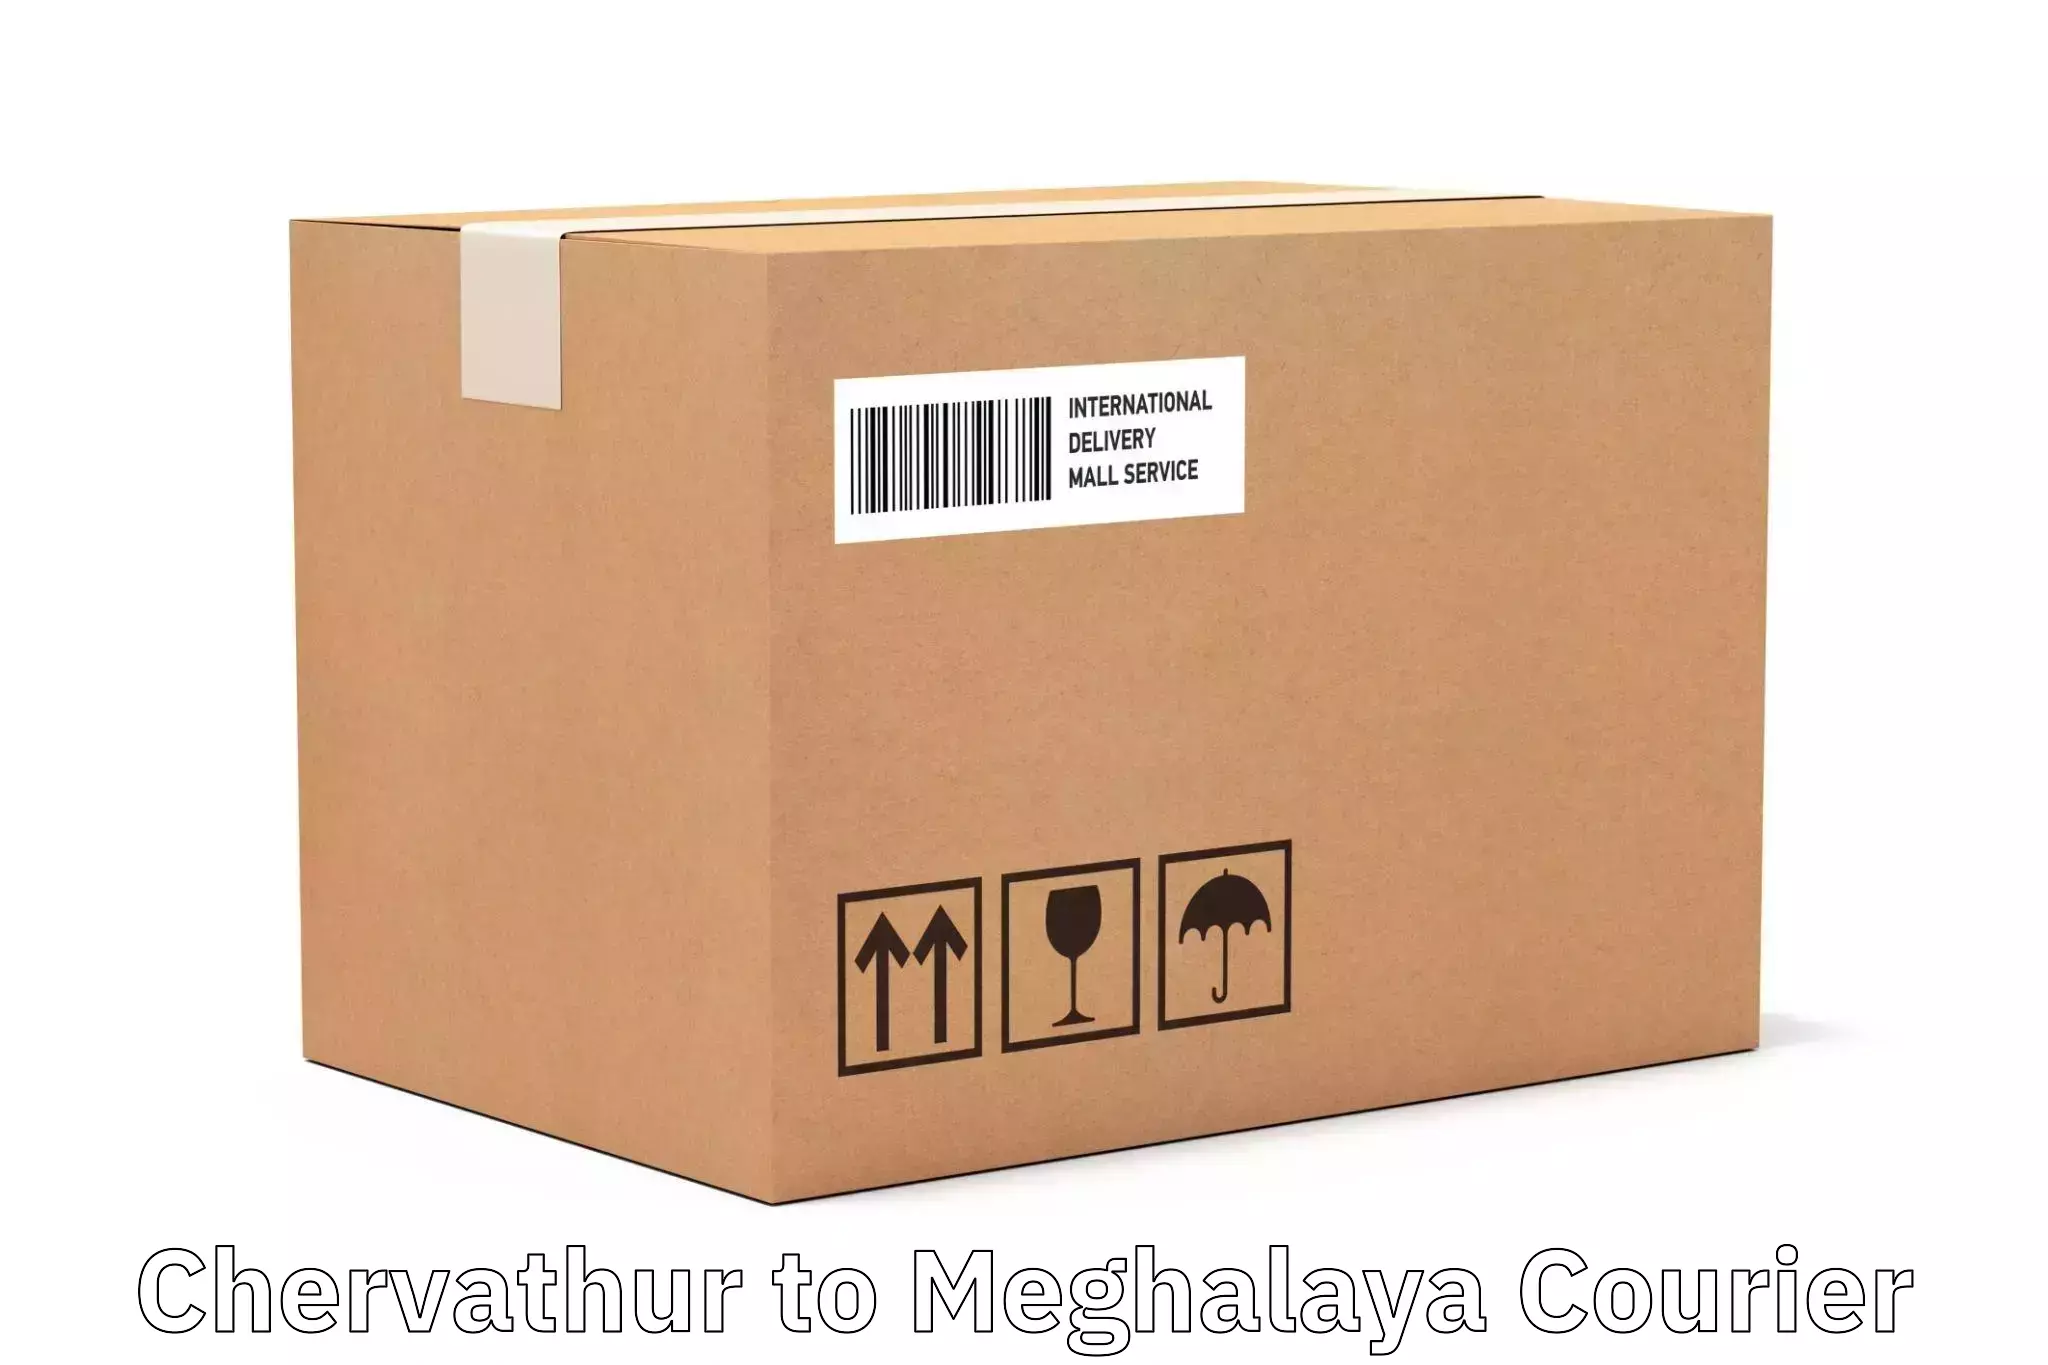 Courier service innovation Chervathur to Meghalaya